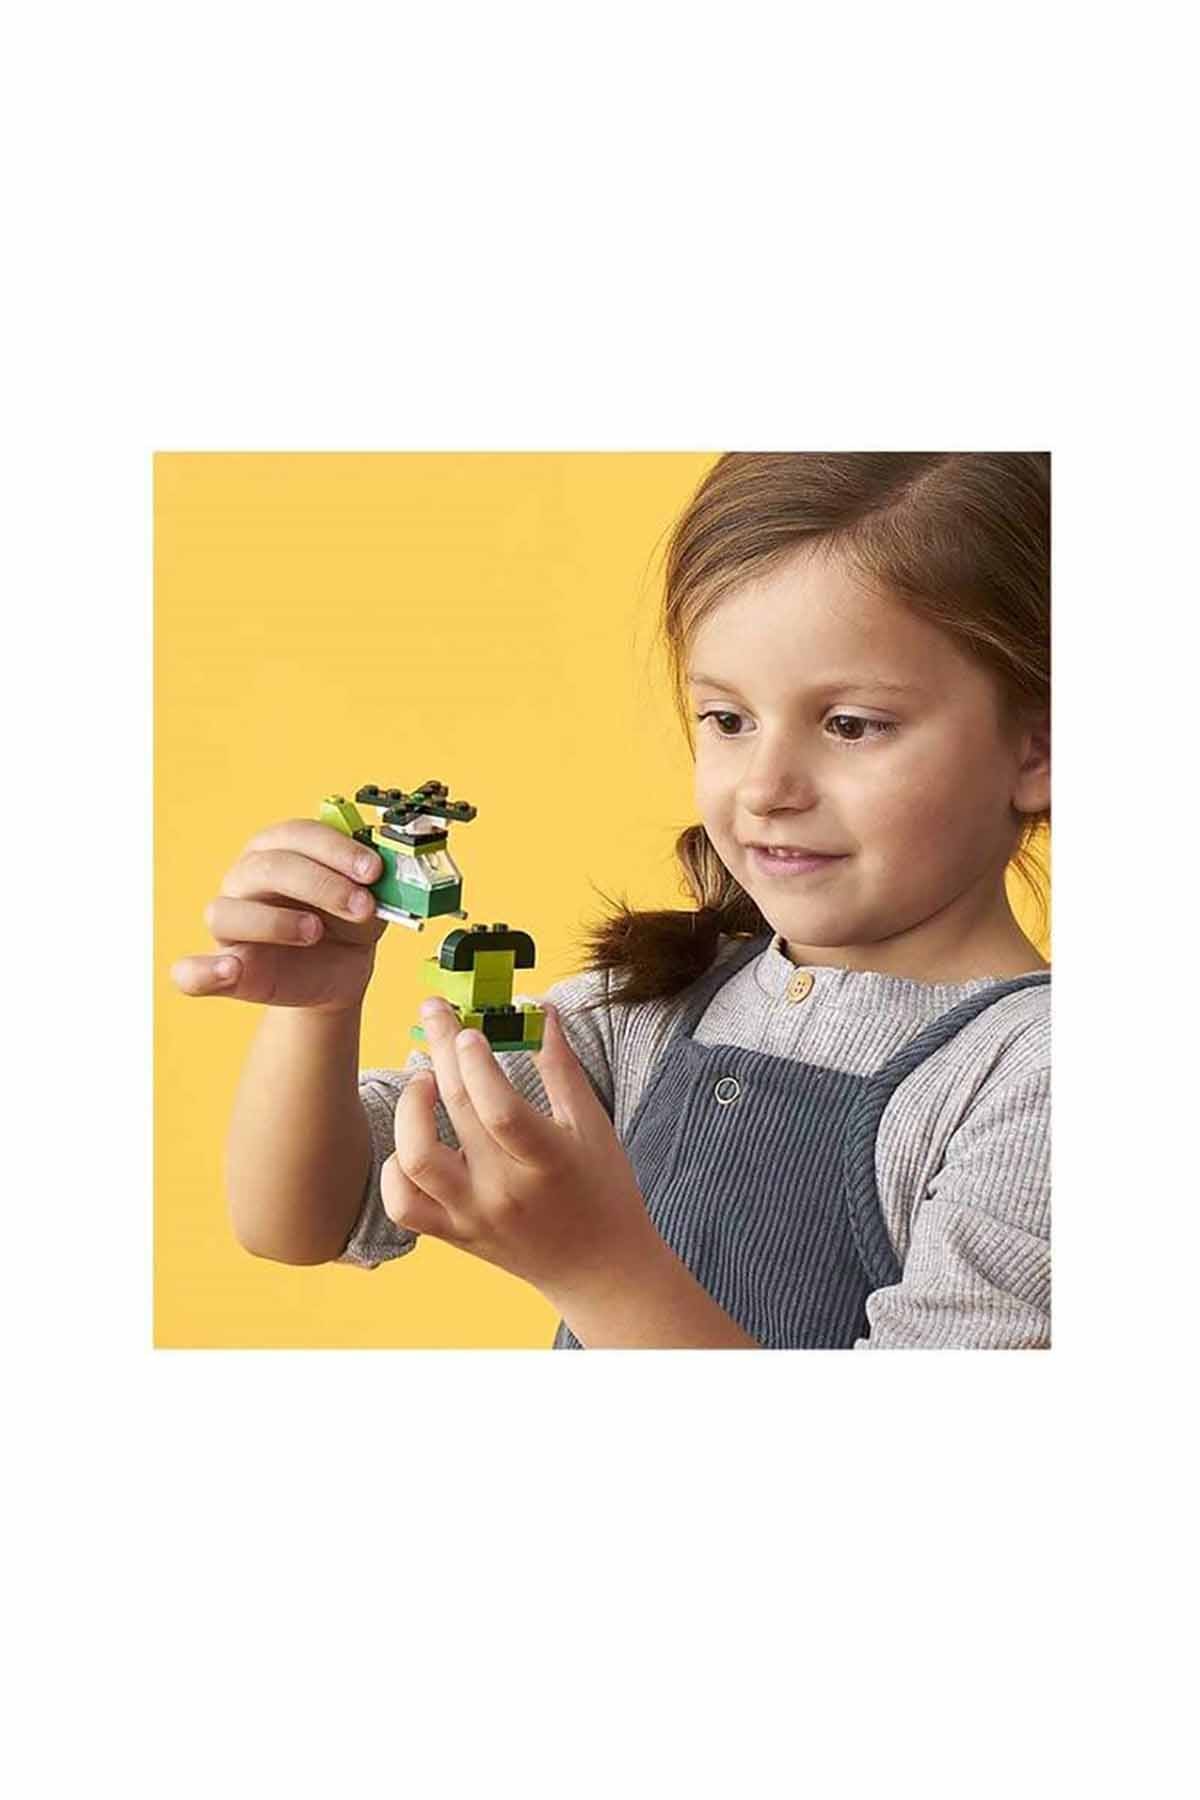 Lego Classic Yaratıcı Yeşil Yapım Parçaları 11007